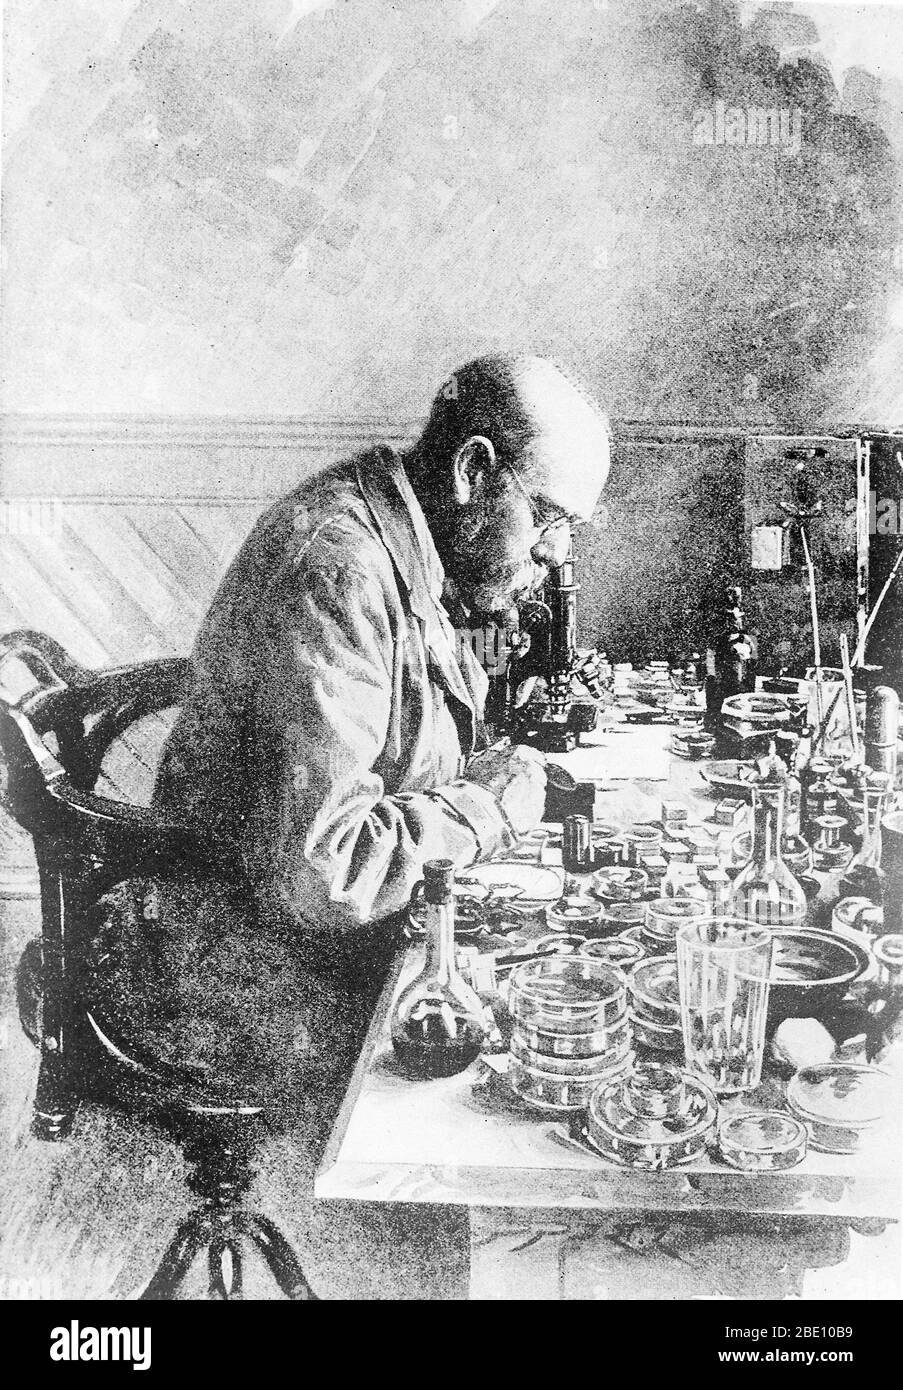 Heinrich Hermann Robert Koch (11 de diciembre de 1843 - 27 de mayo de 1910) fue un médico y microbiólogo alemán. Como fundador de la bacteriología moderna, identificó los agentes causativos de la tuberculosis, el cólera y el ántrax y dio apoyo experimental al concepto de enfermedad infecciosa, que incluyó experimentos con seres humanos y animales. Koch creó y mejoró tecnologías y técnicas de laboratorio, y realizó descubrimientos clave en salud pública. Por su investigación sobre la tuberculosis, Koch recibió el Premio Nobel de Fisiología o Medicina en 1905. En 1910, Koch sufrió un ataque cardíaco y nunca hizo un ataque Foto de stock